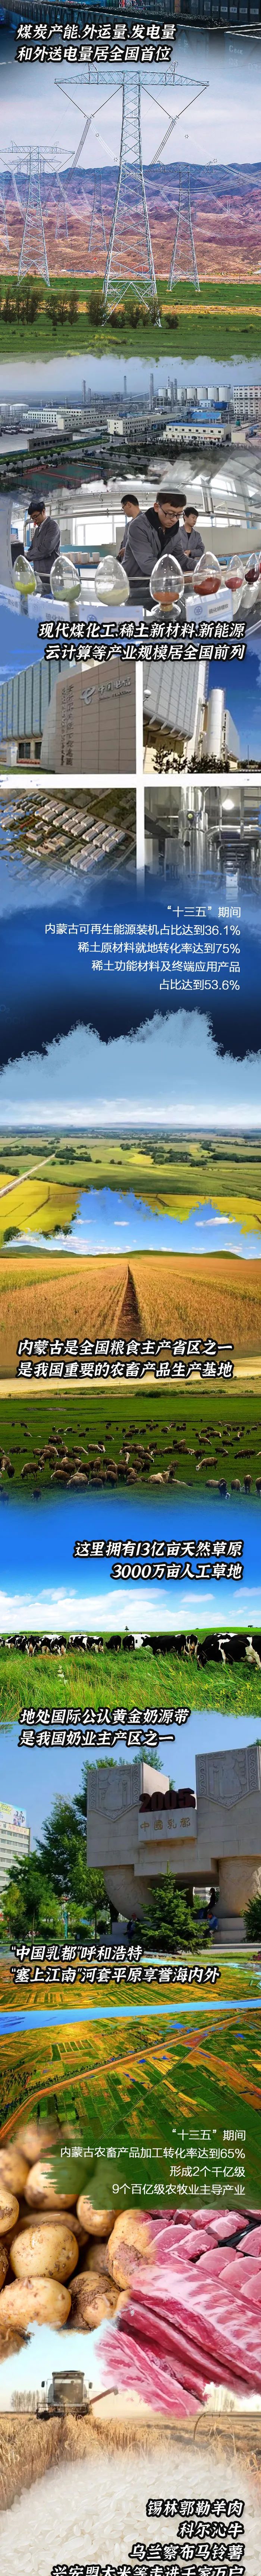 精美大图 | 是谁，对内蒙古这片土地爱得深沉？ (http://www.k-yun.cn/) 国内 第6张